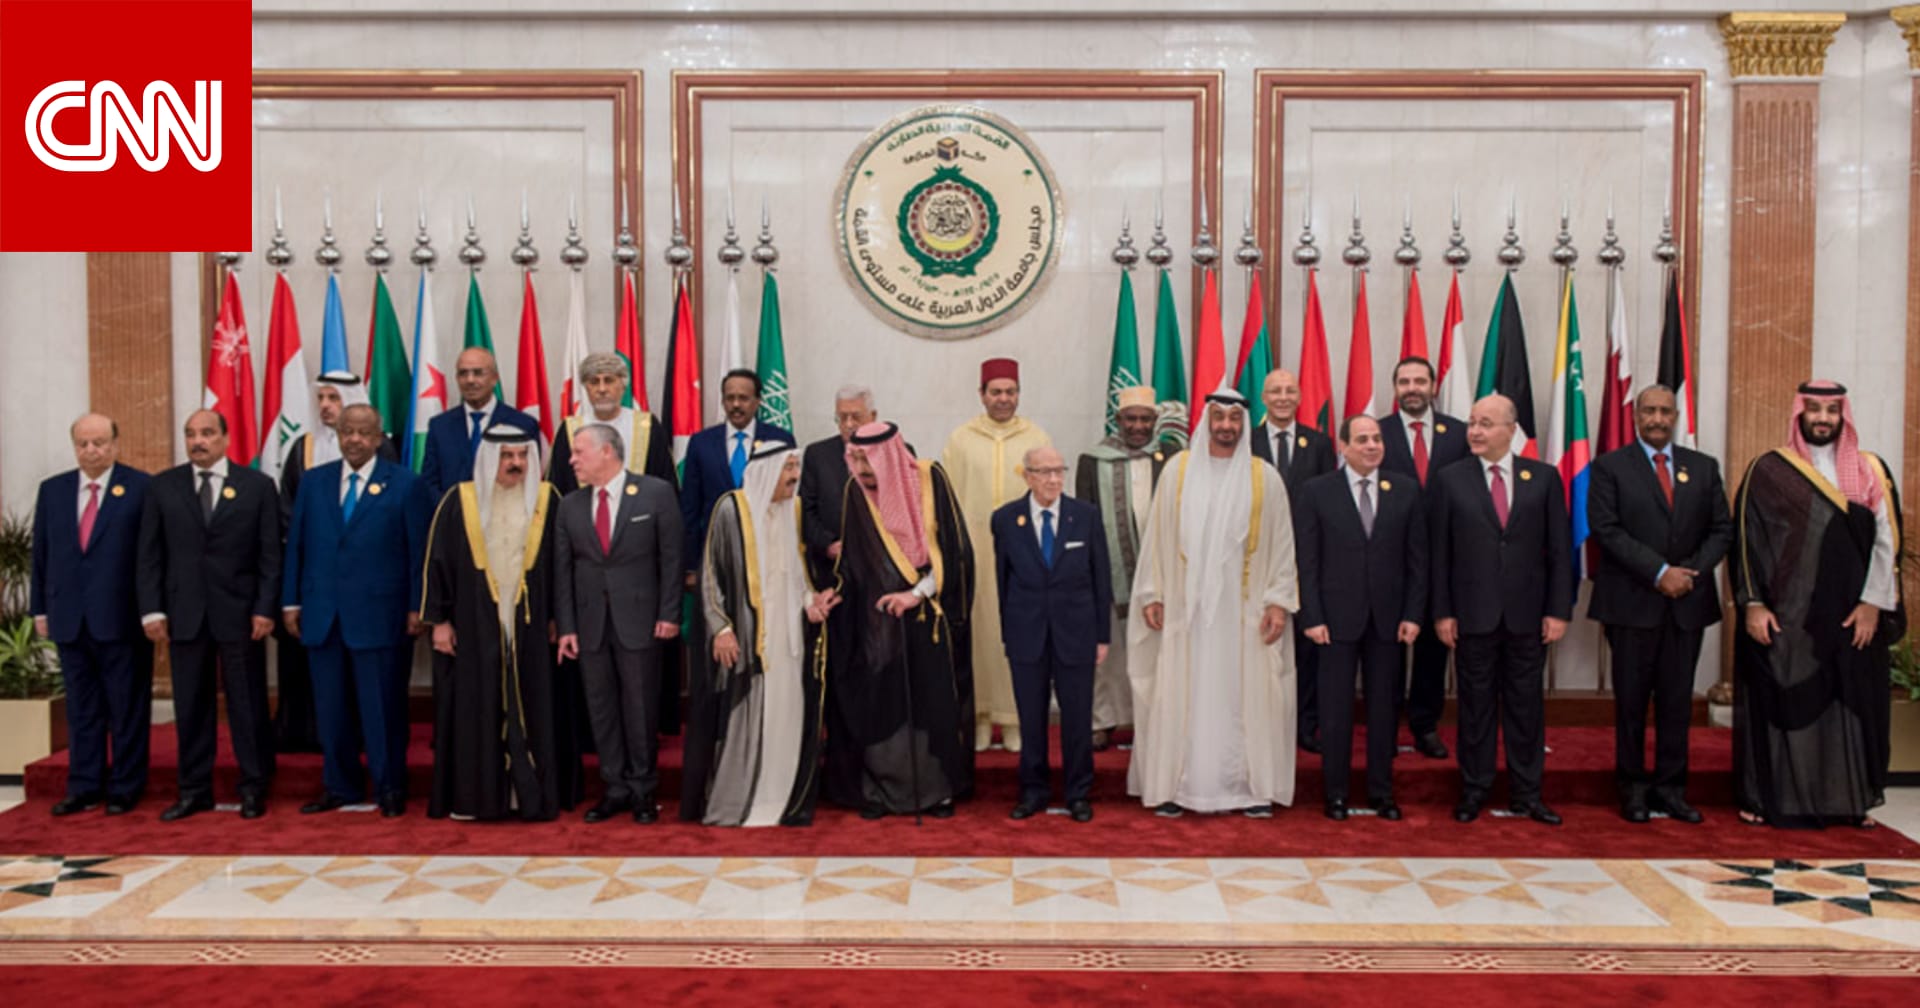 الحكومة السعودية تنشر فيديو بدقيقتين أبرزت أقوال قادة وزعماء بالقمة الخليجية العربية